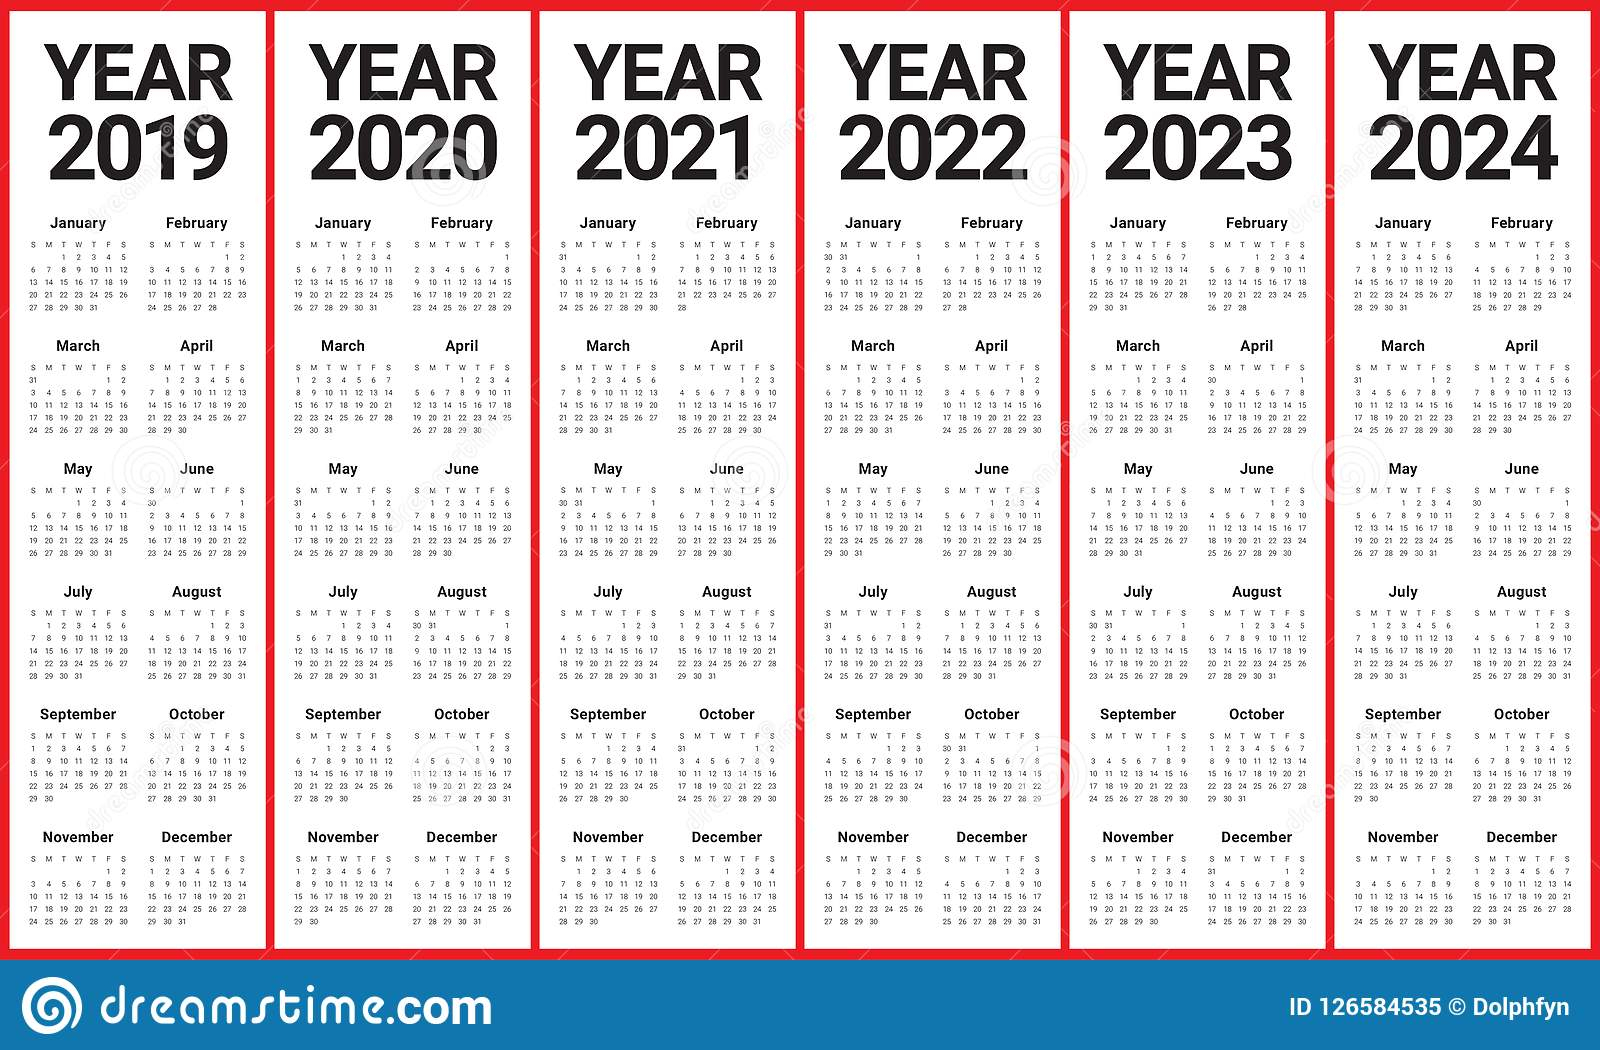 Abss Calendar 2021 2022 | Calendar 2021